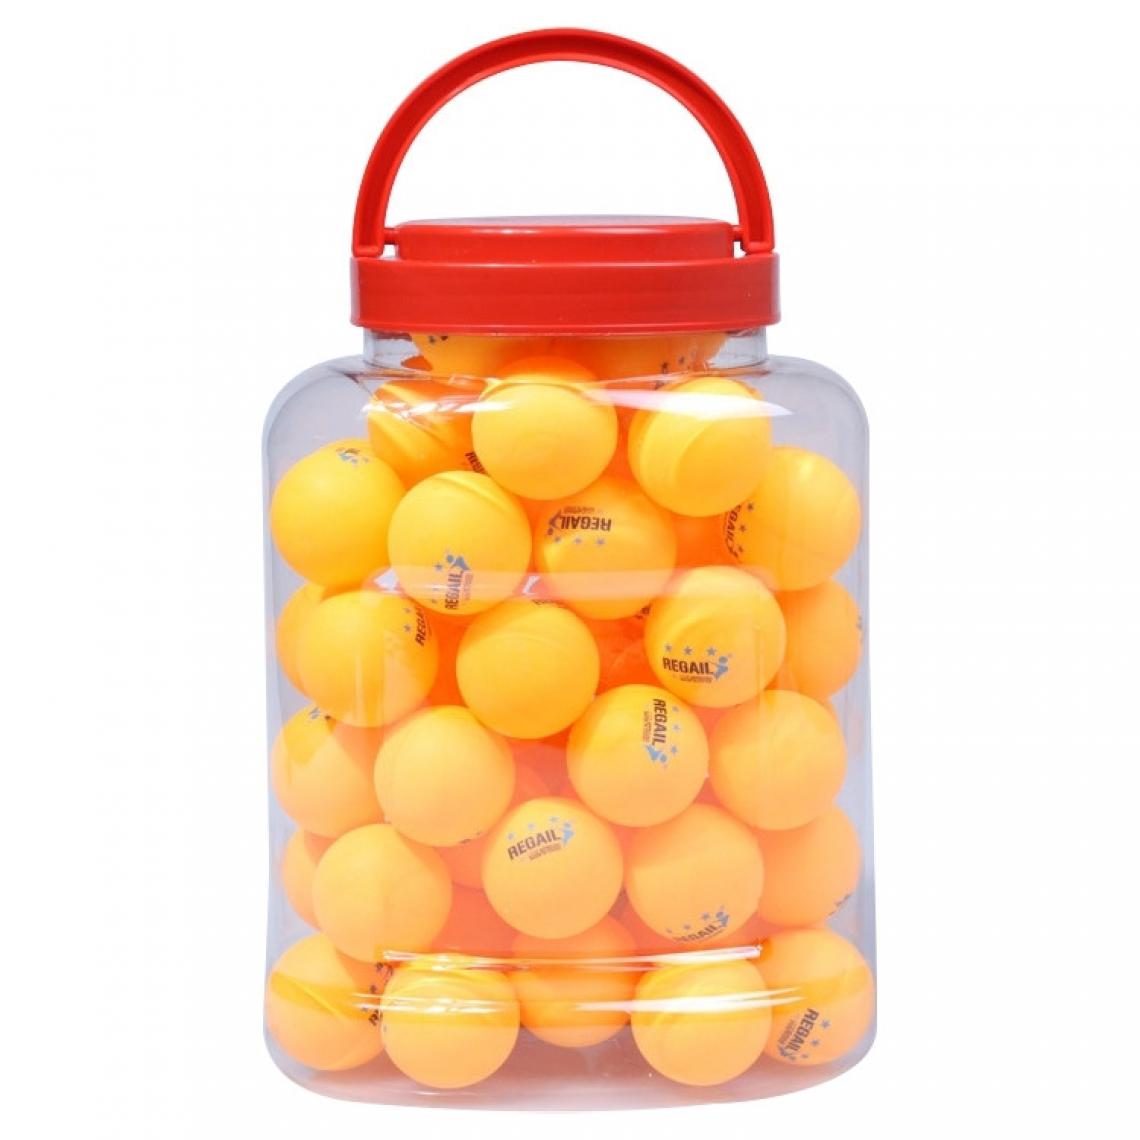 Wewoo - REGAIL 60 PCS Barrel Celluloid Ballon d'entraînement de tennis de table bleu + jaune - Jeux de balles